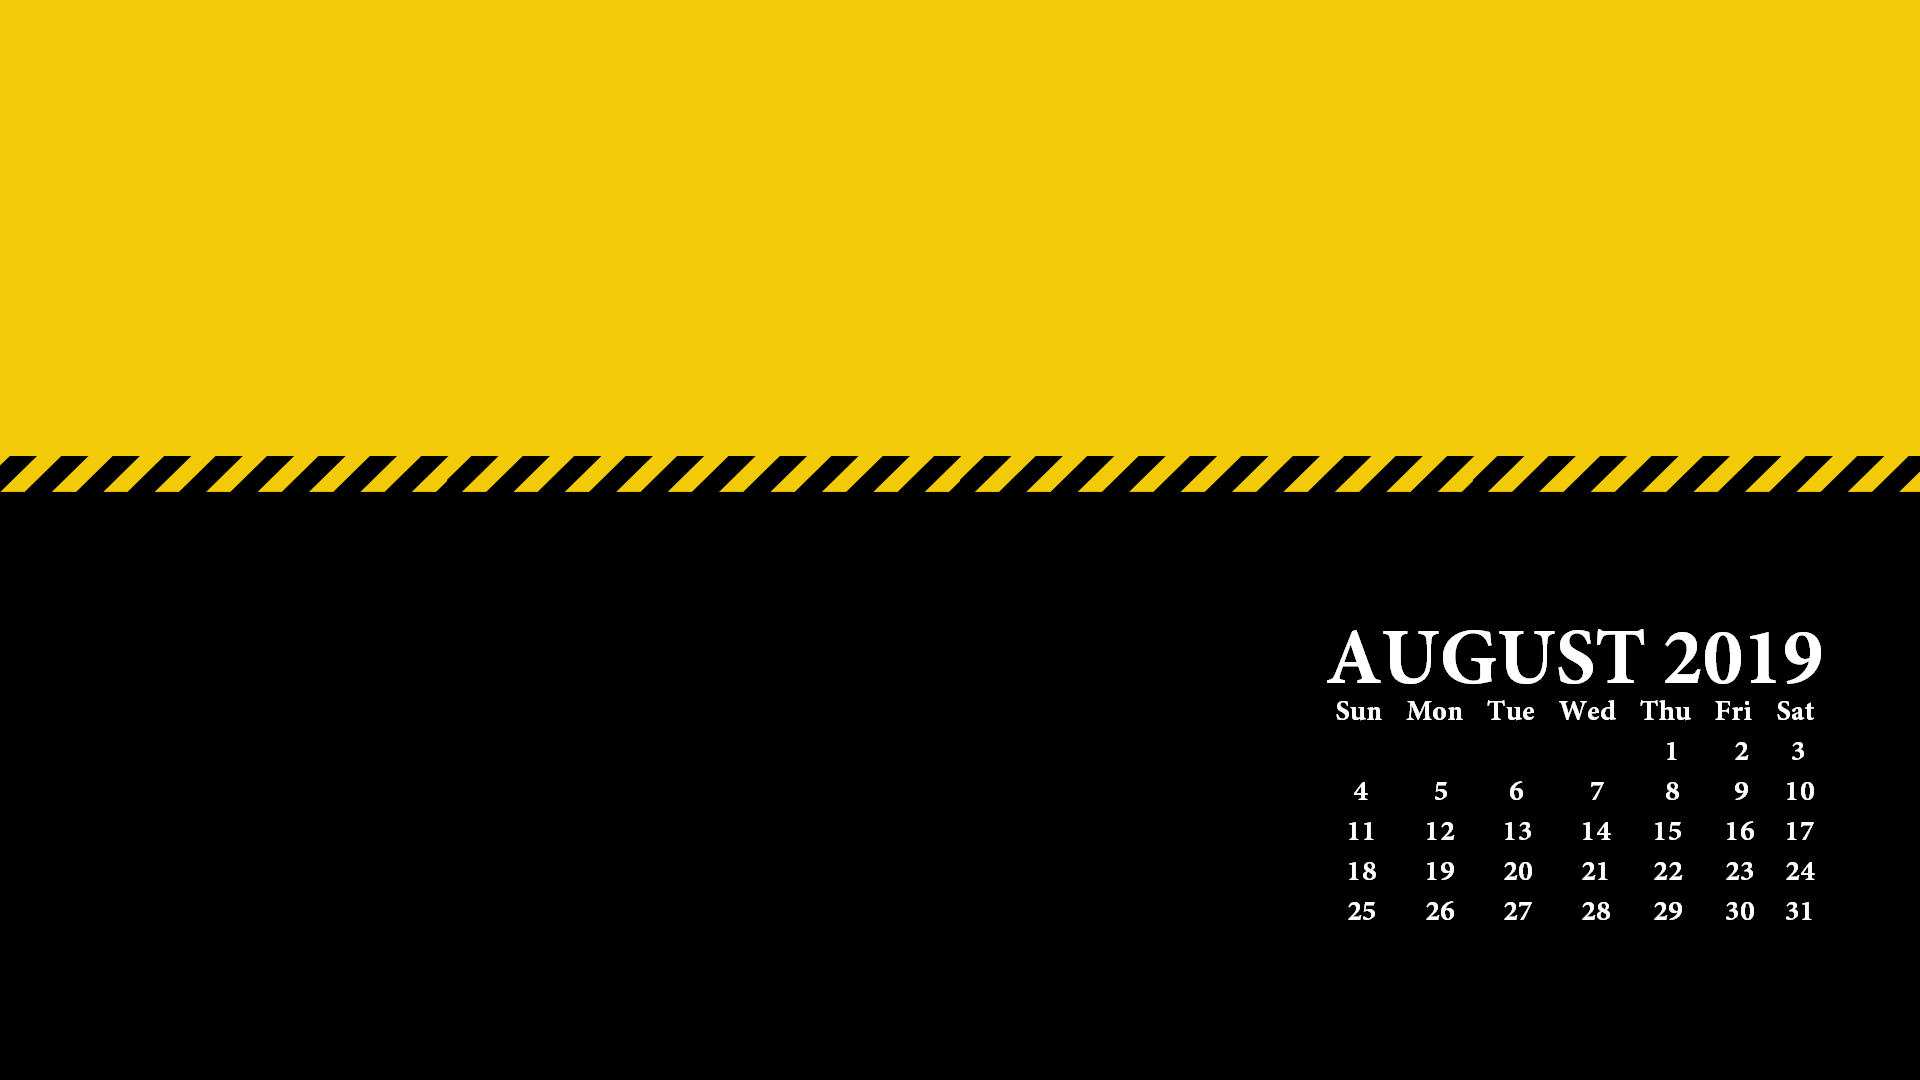 August 2019 Desktop Calendar Wallpaper - Desktop August Calendar 2019 Wallpaper Hd - HD Wallpaper 